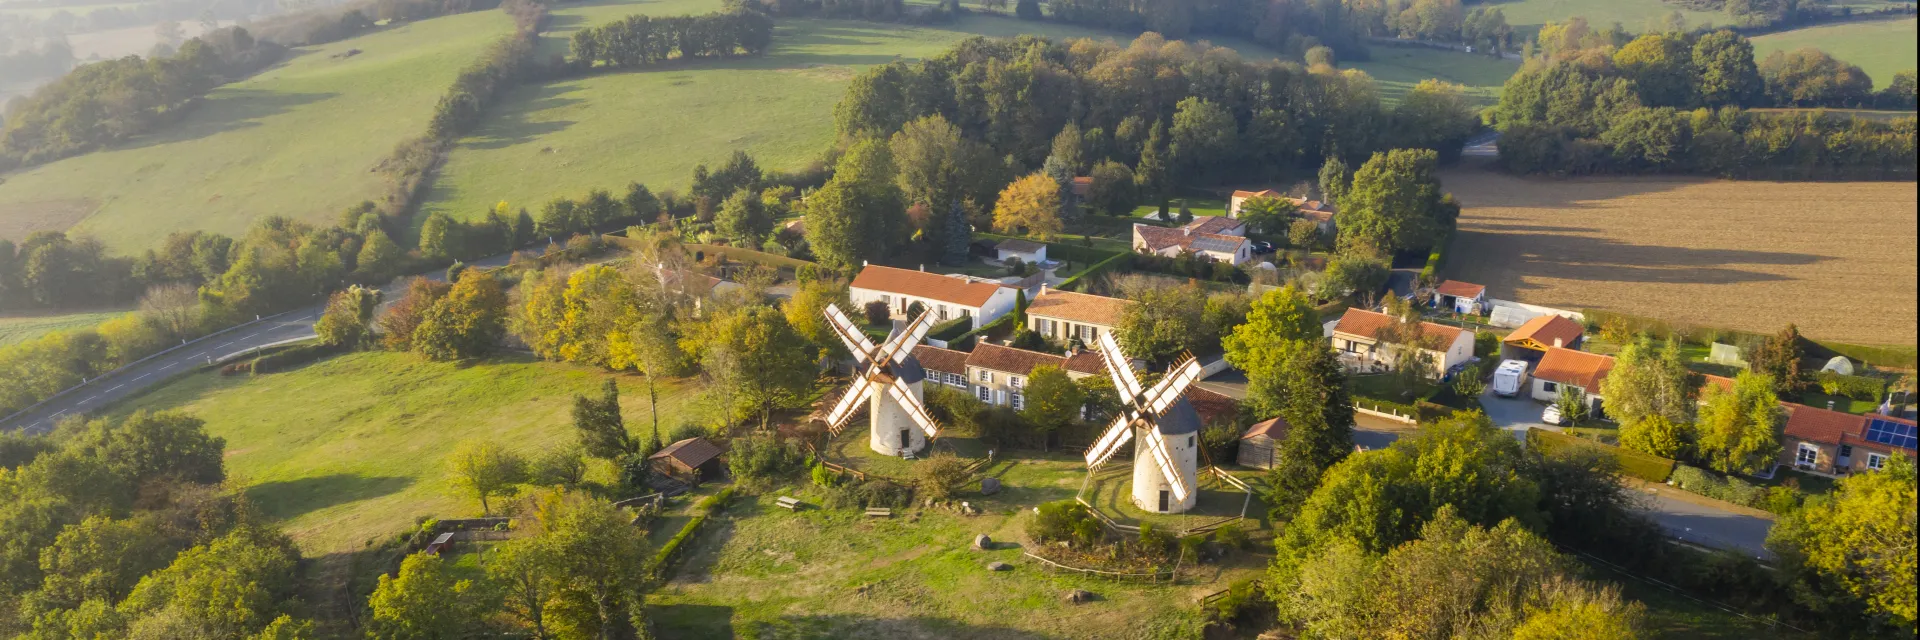 vue aérienne de Pouzauges avec verdure, moulins et habitations